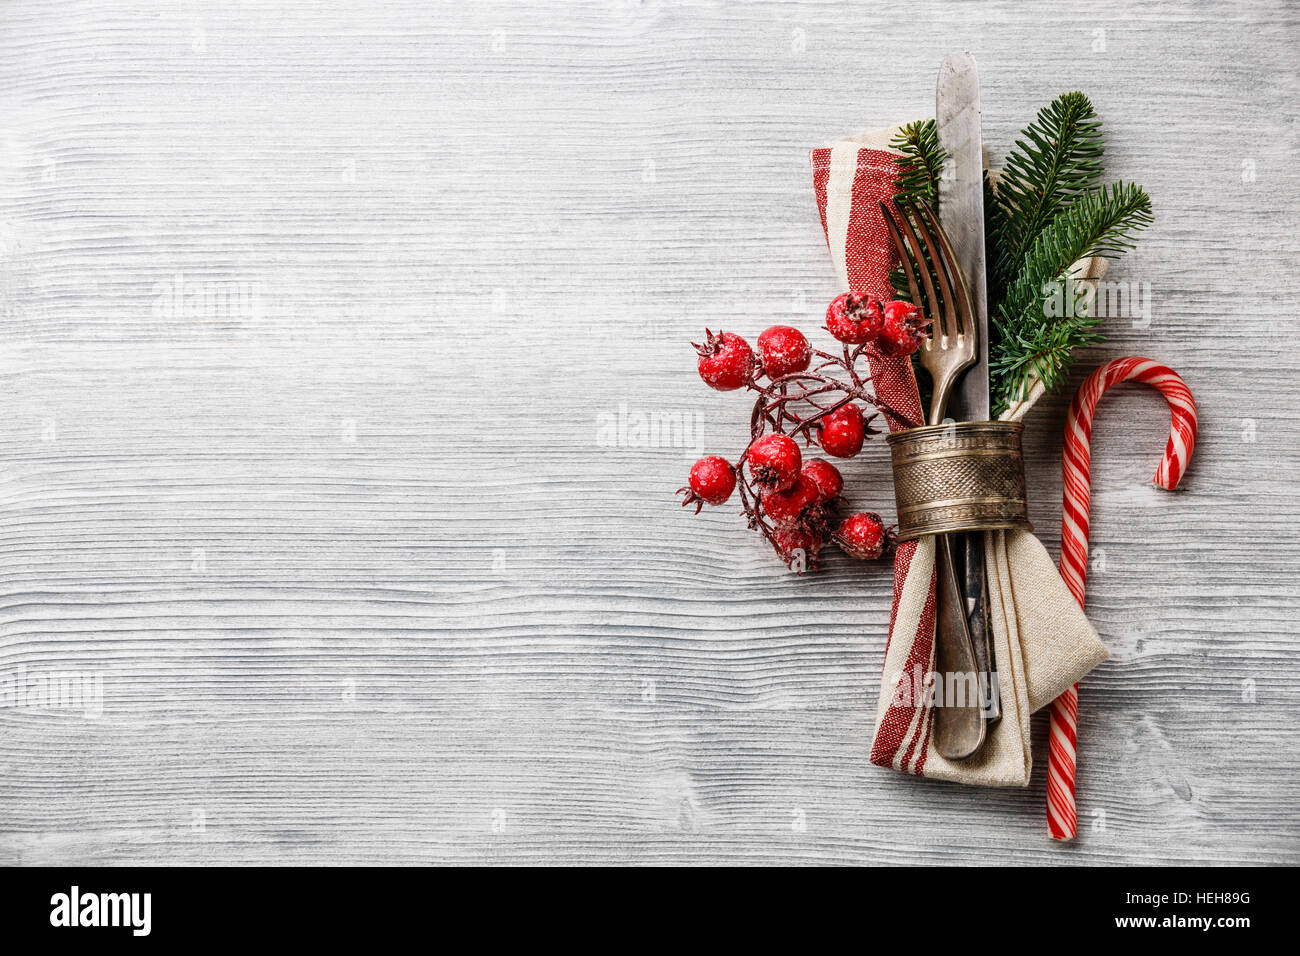 Tabelle-Gabel und Messer set mit Serviette, Weihnachten Tanne Zweig, roten Beeren und Serviettenring auf grauem Holz Hintergrund Textfreiraum Stockfoto